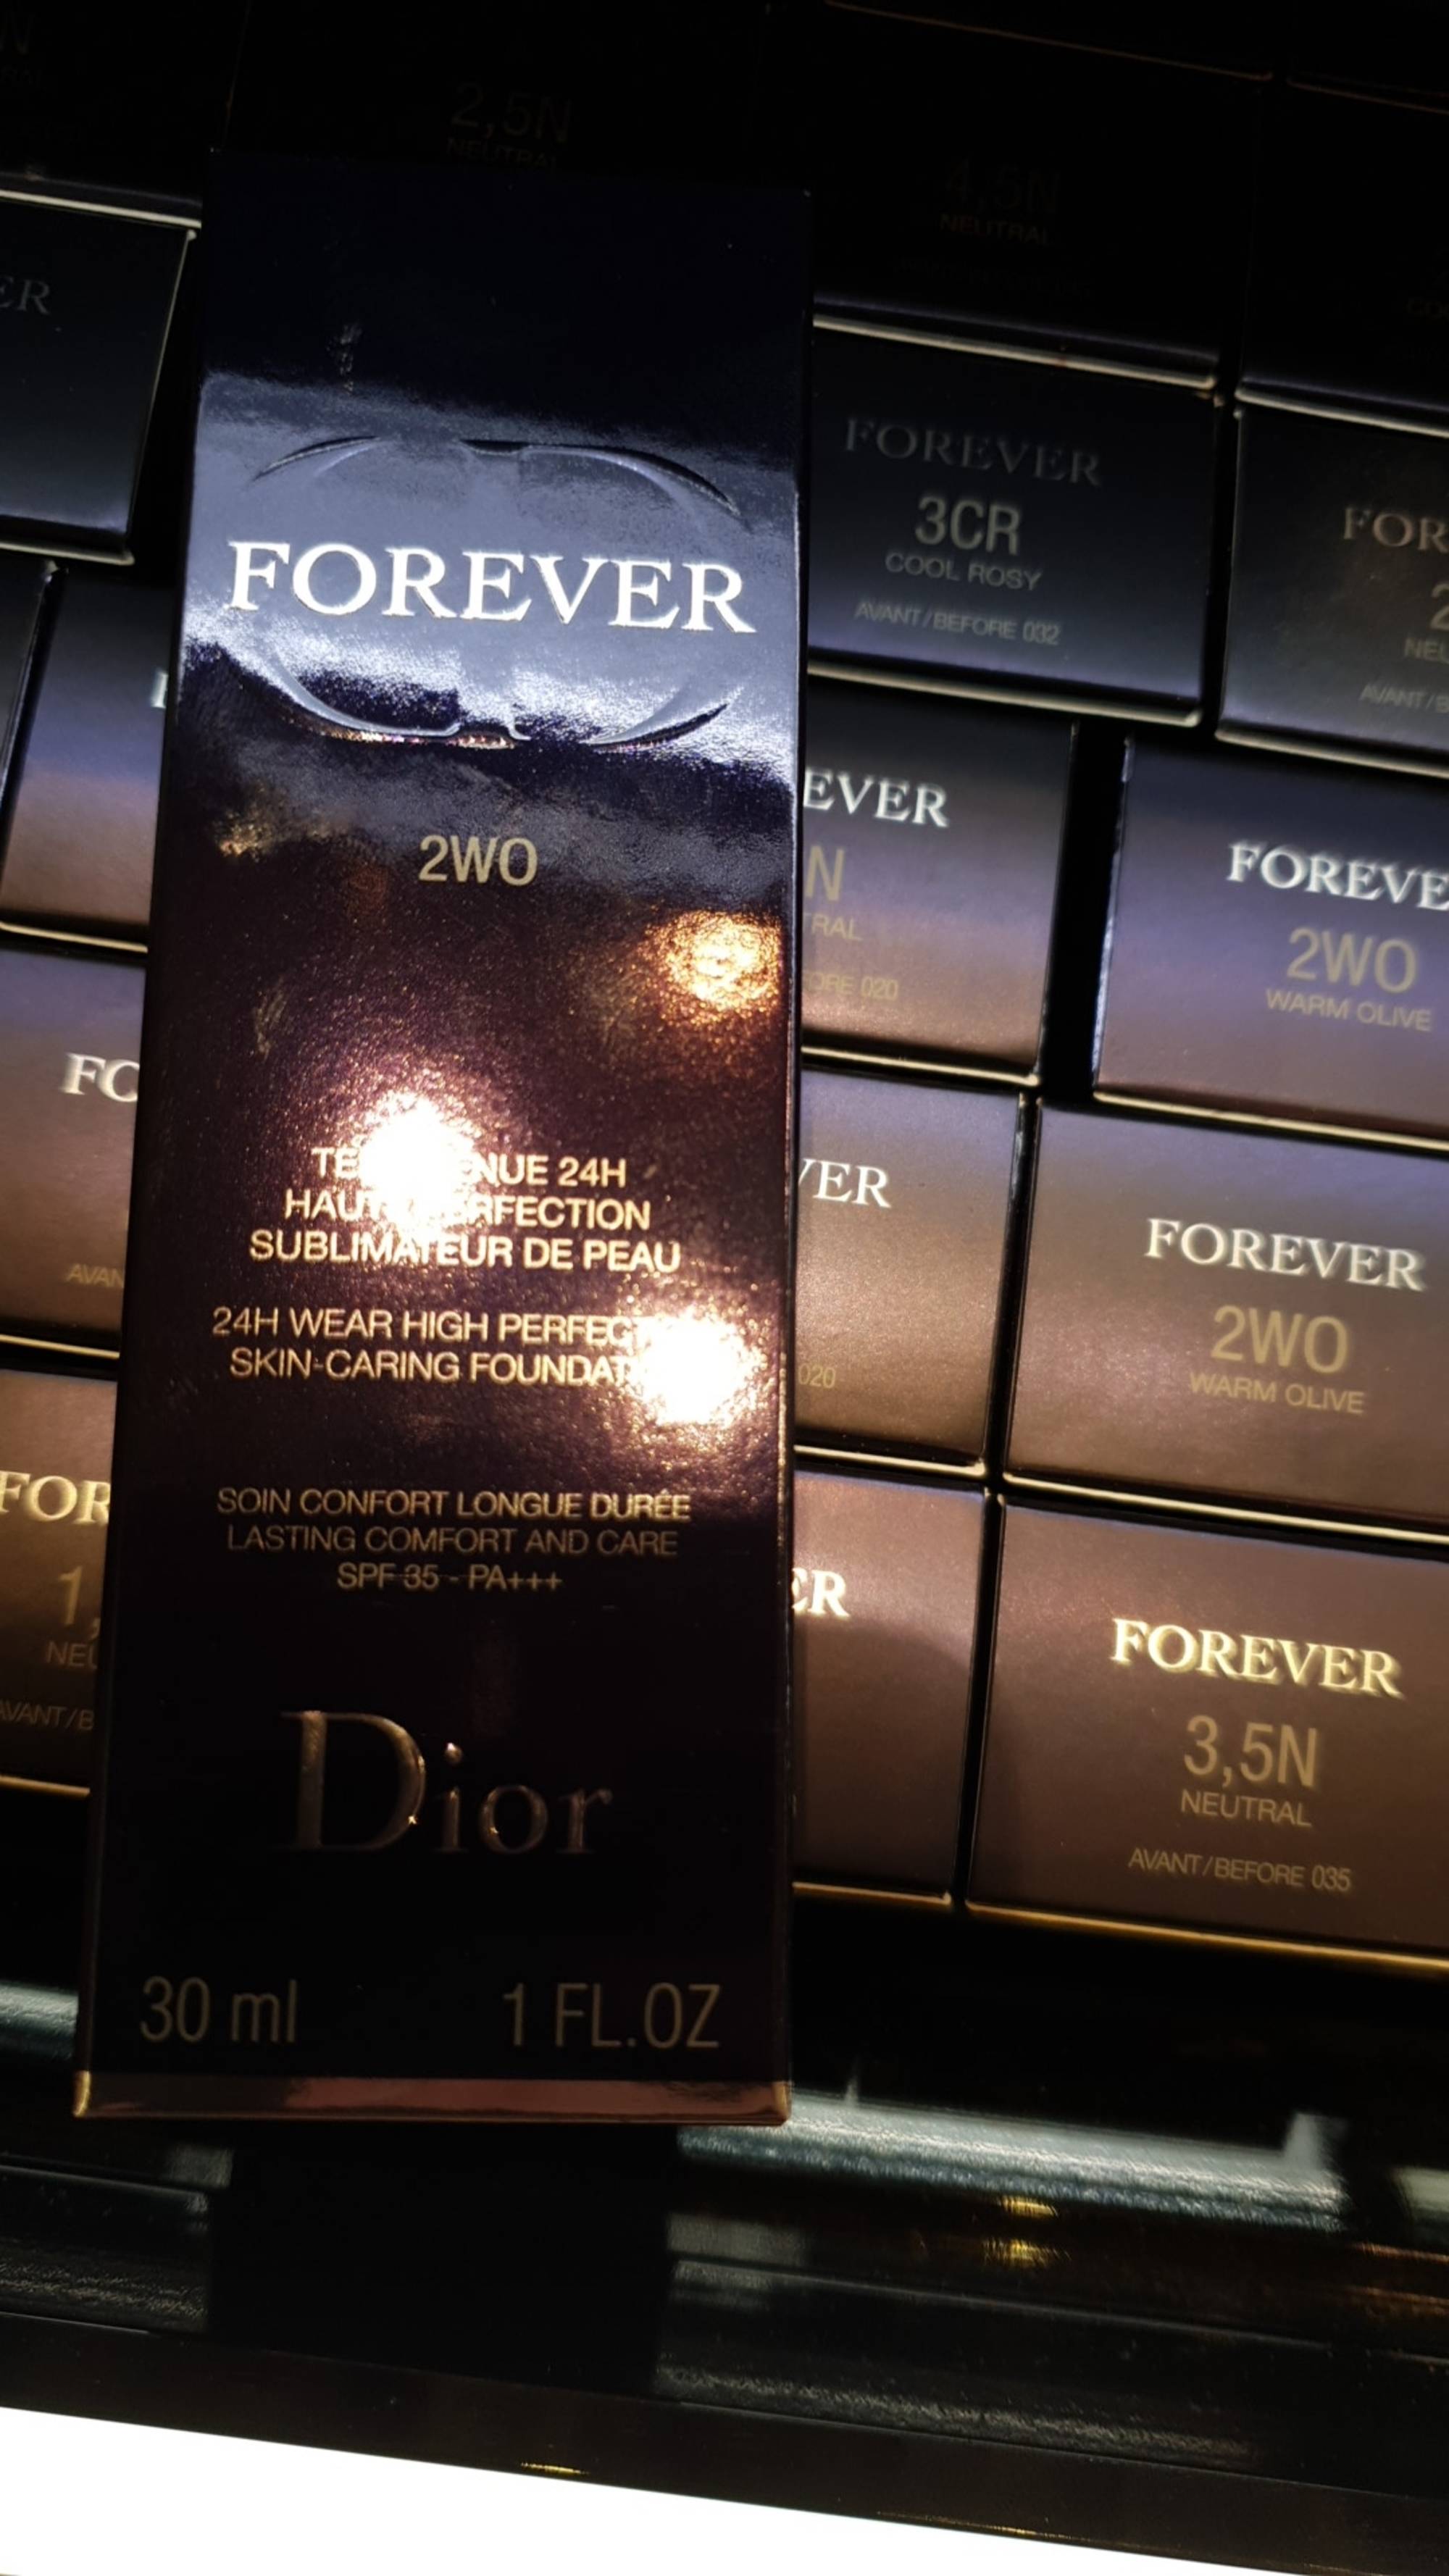 DIOR - Forever - Teint tenue 24h haute perfection sublimateur de peau SPF 35